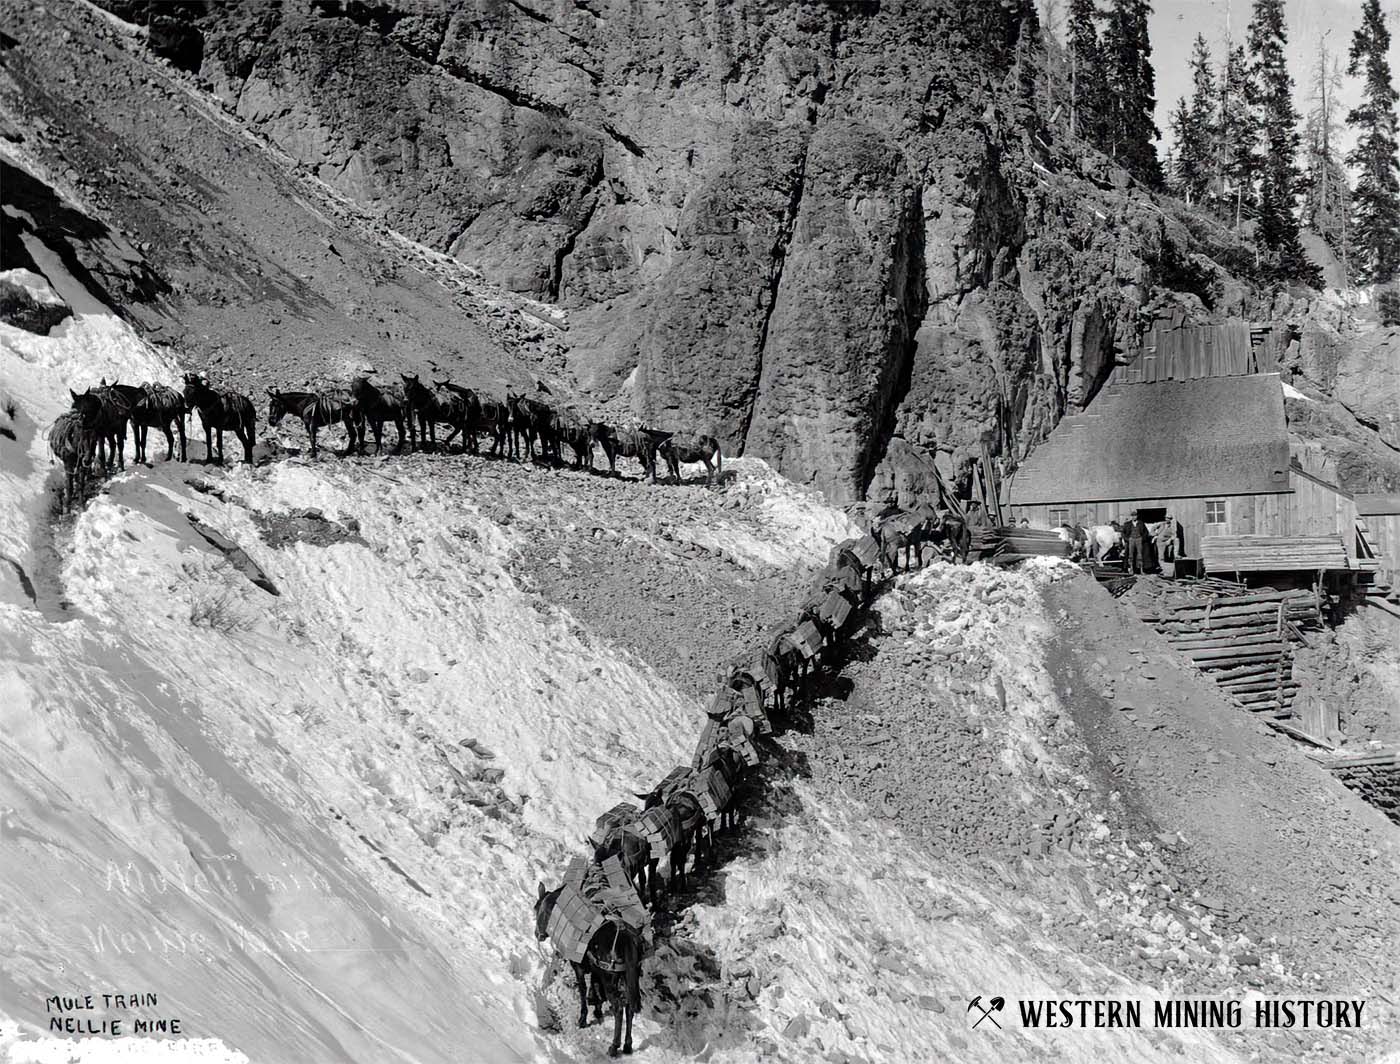 Mule train at the Nellie mine near Telluride, Colorado ca. 1890.